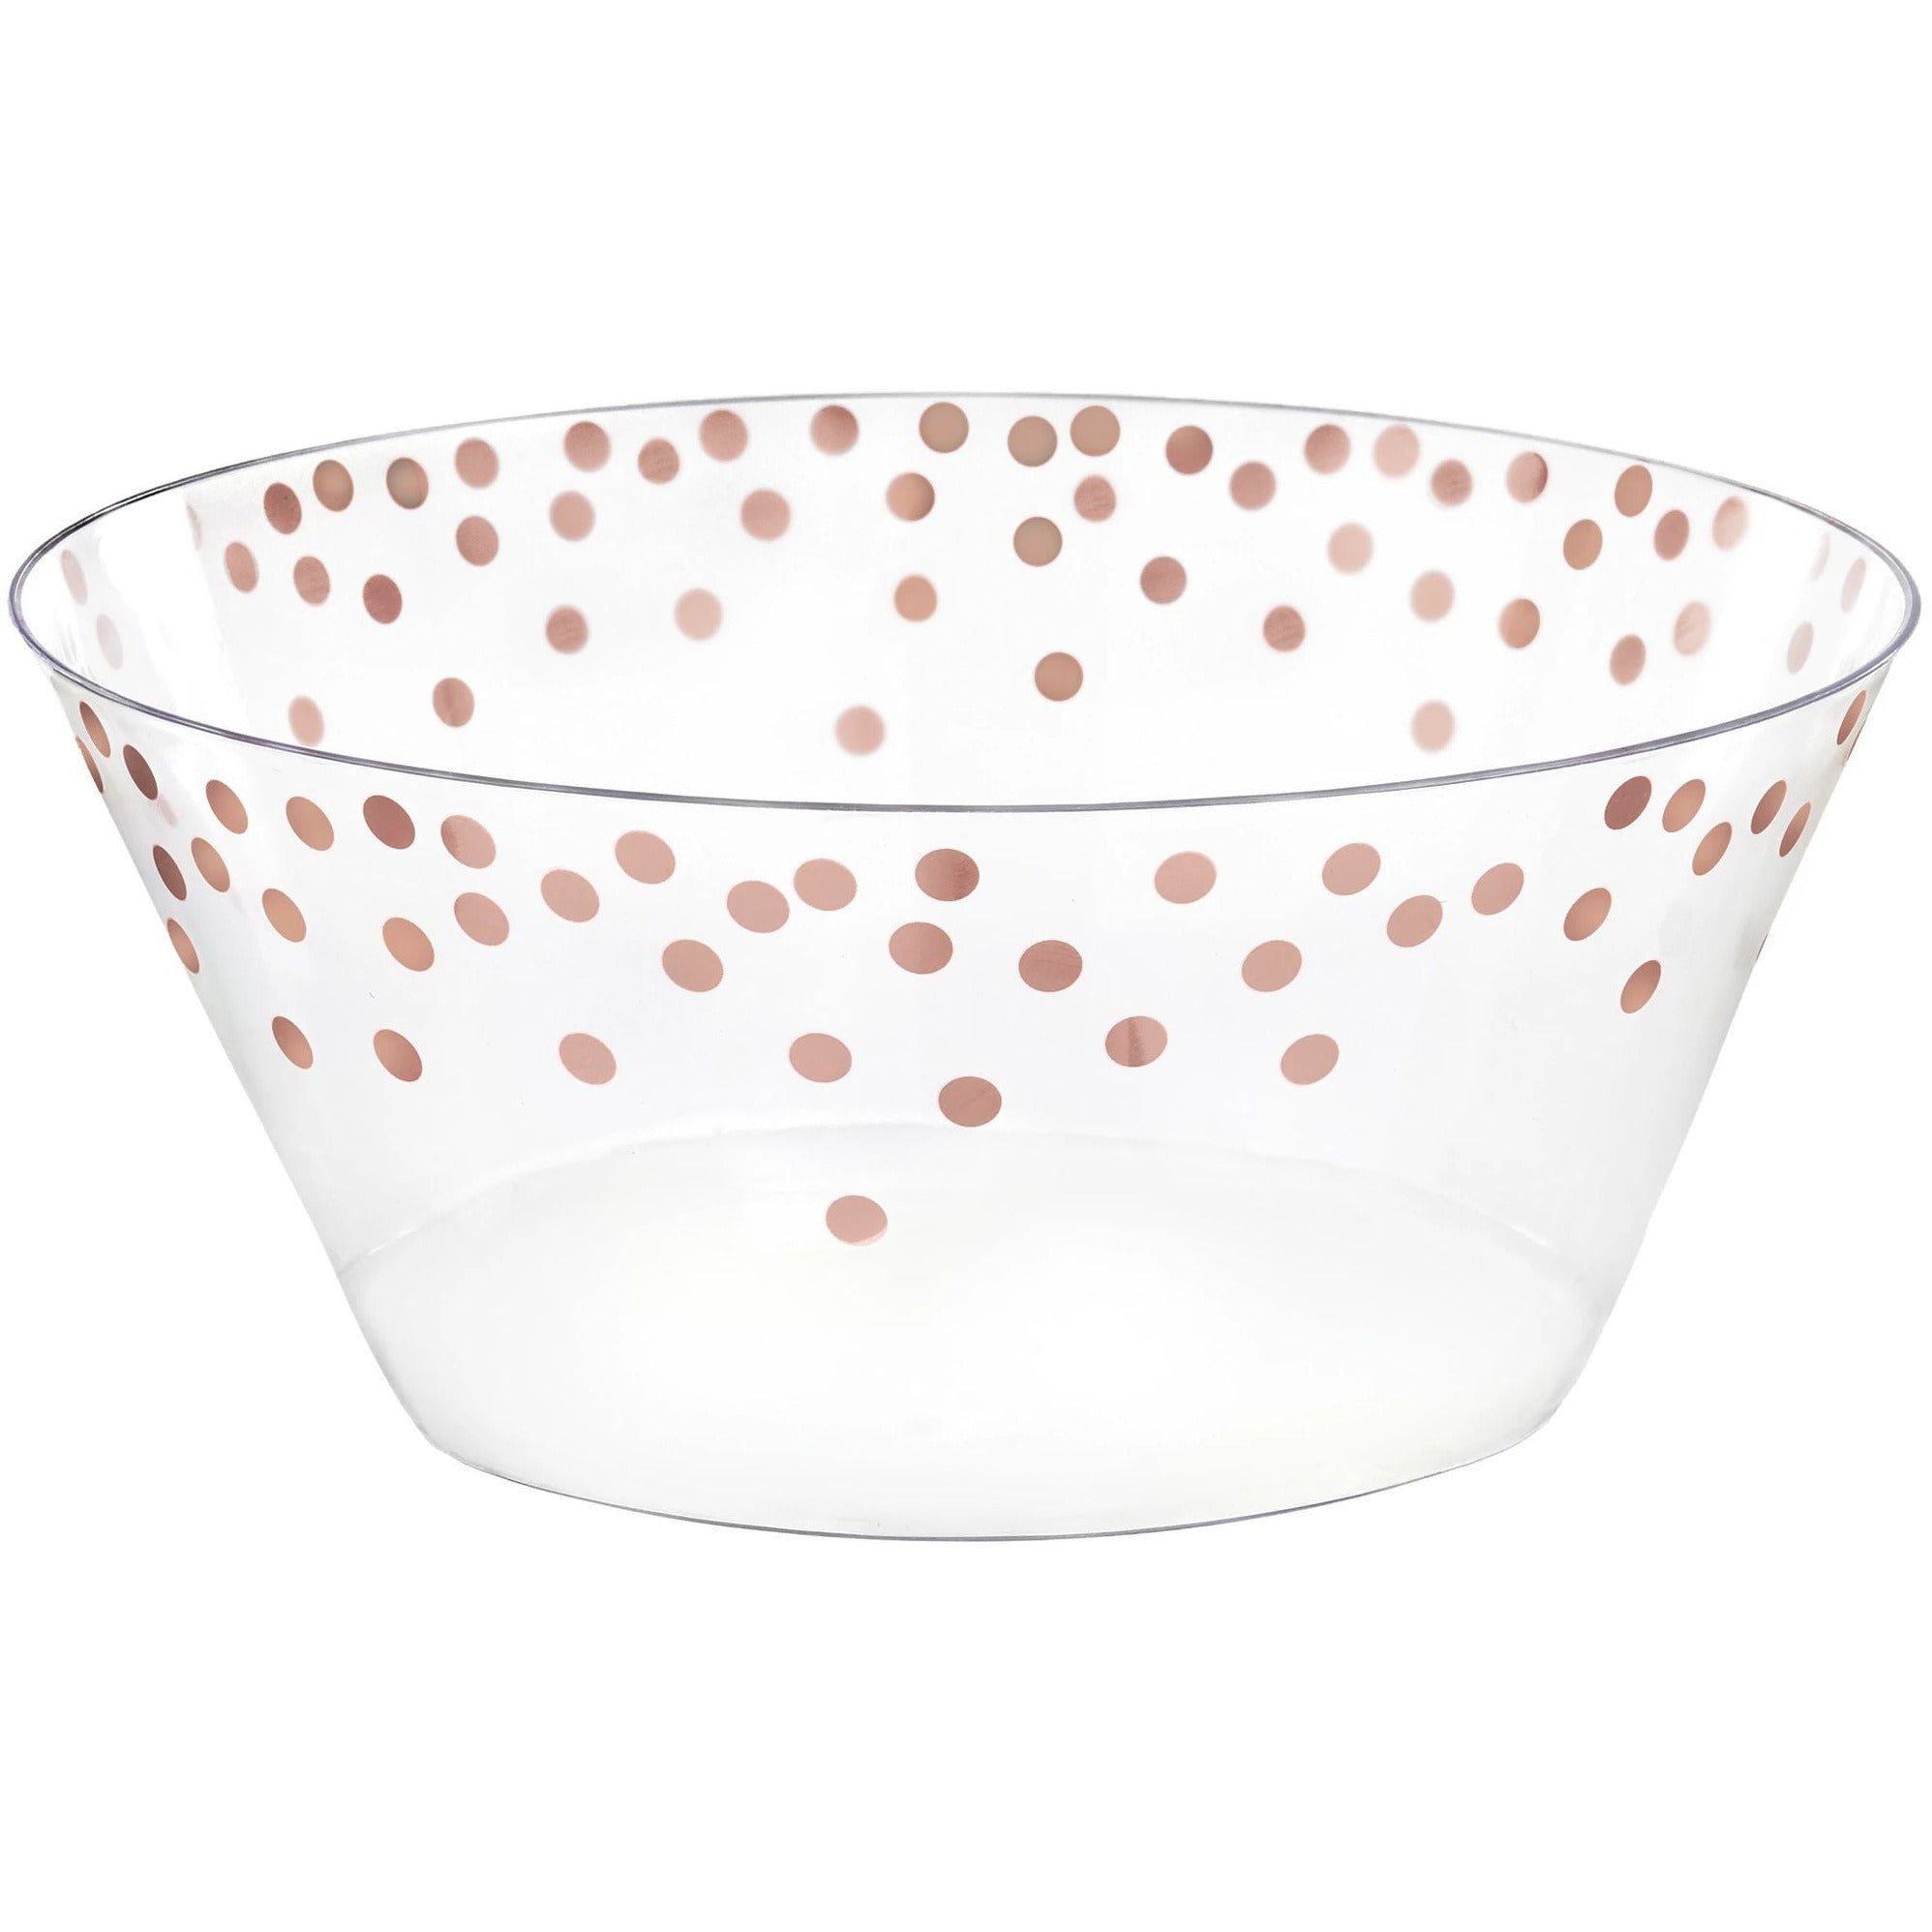 Amscan BASIC Plastic Serving Bowl Large -Rose Gold Dots